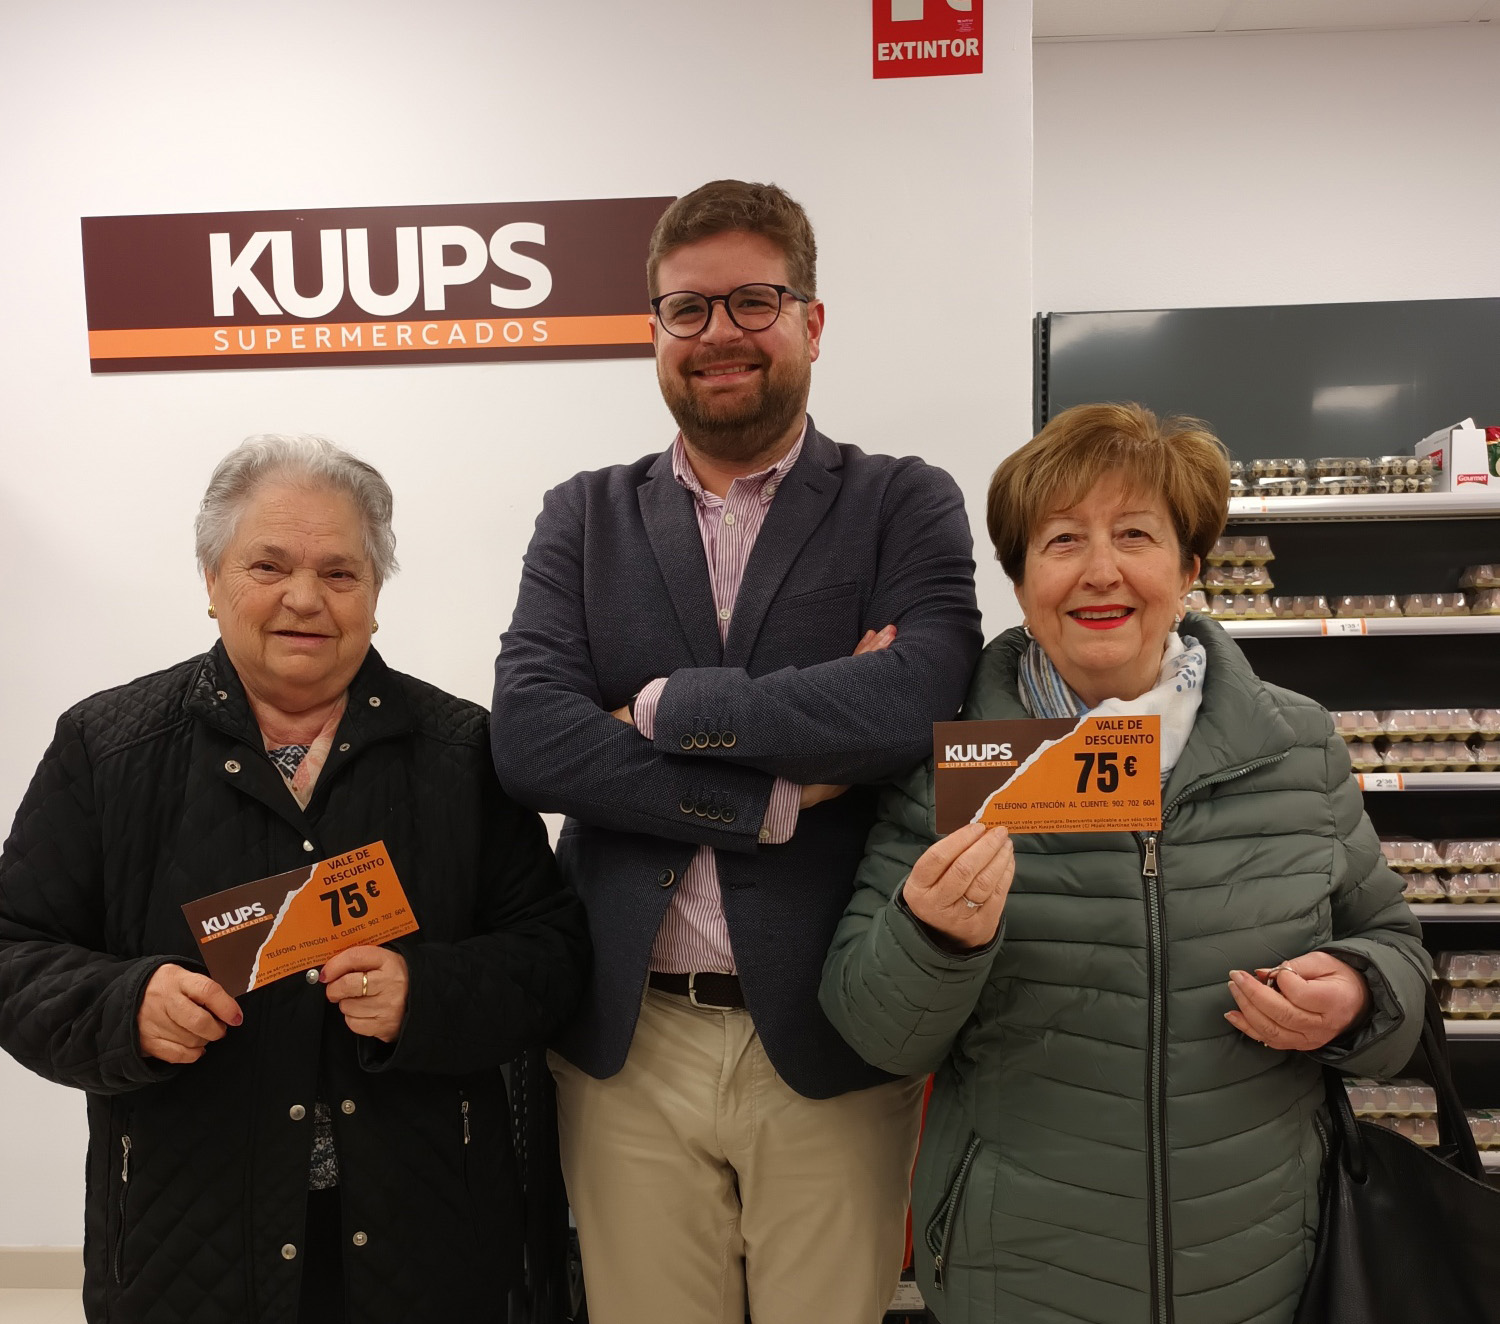 Kuups Supermercats regala dos vals de compra de 75€ cadascun El Periòdic d'Ontinyent - Noticies a Ontinyent